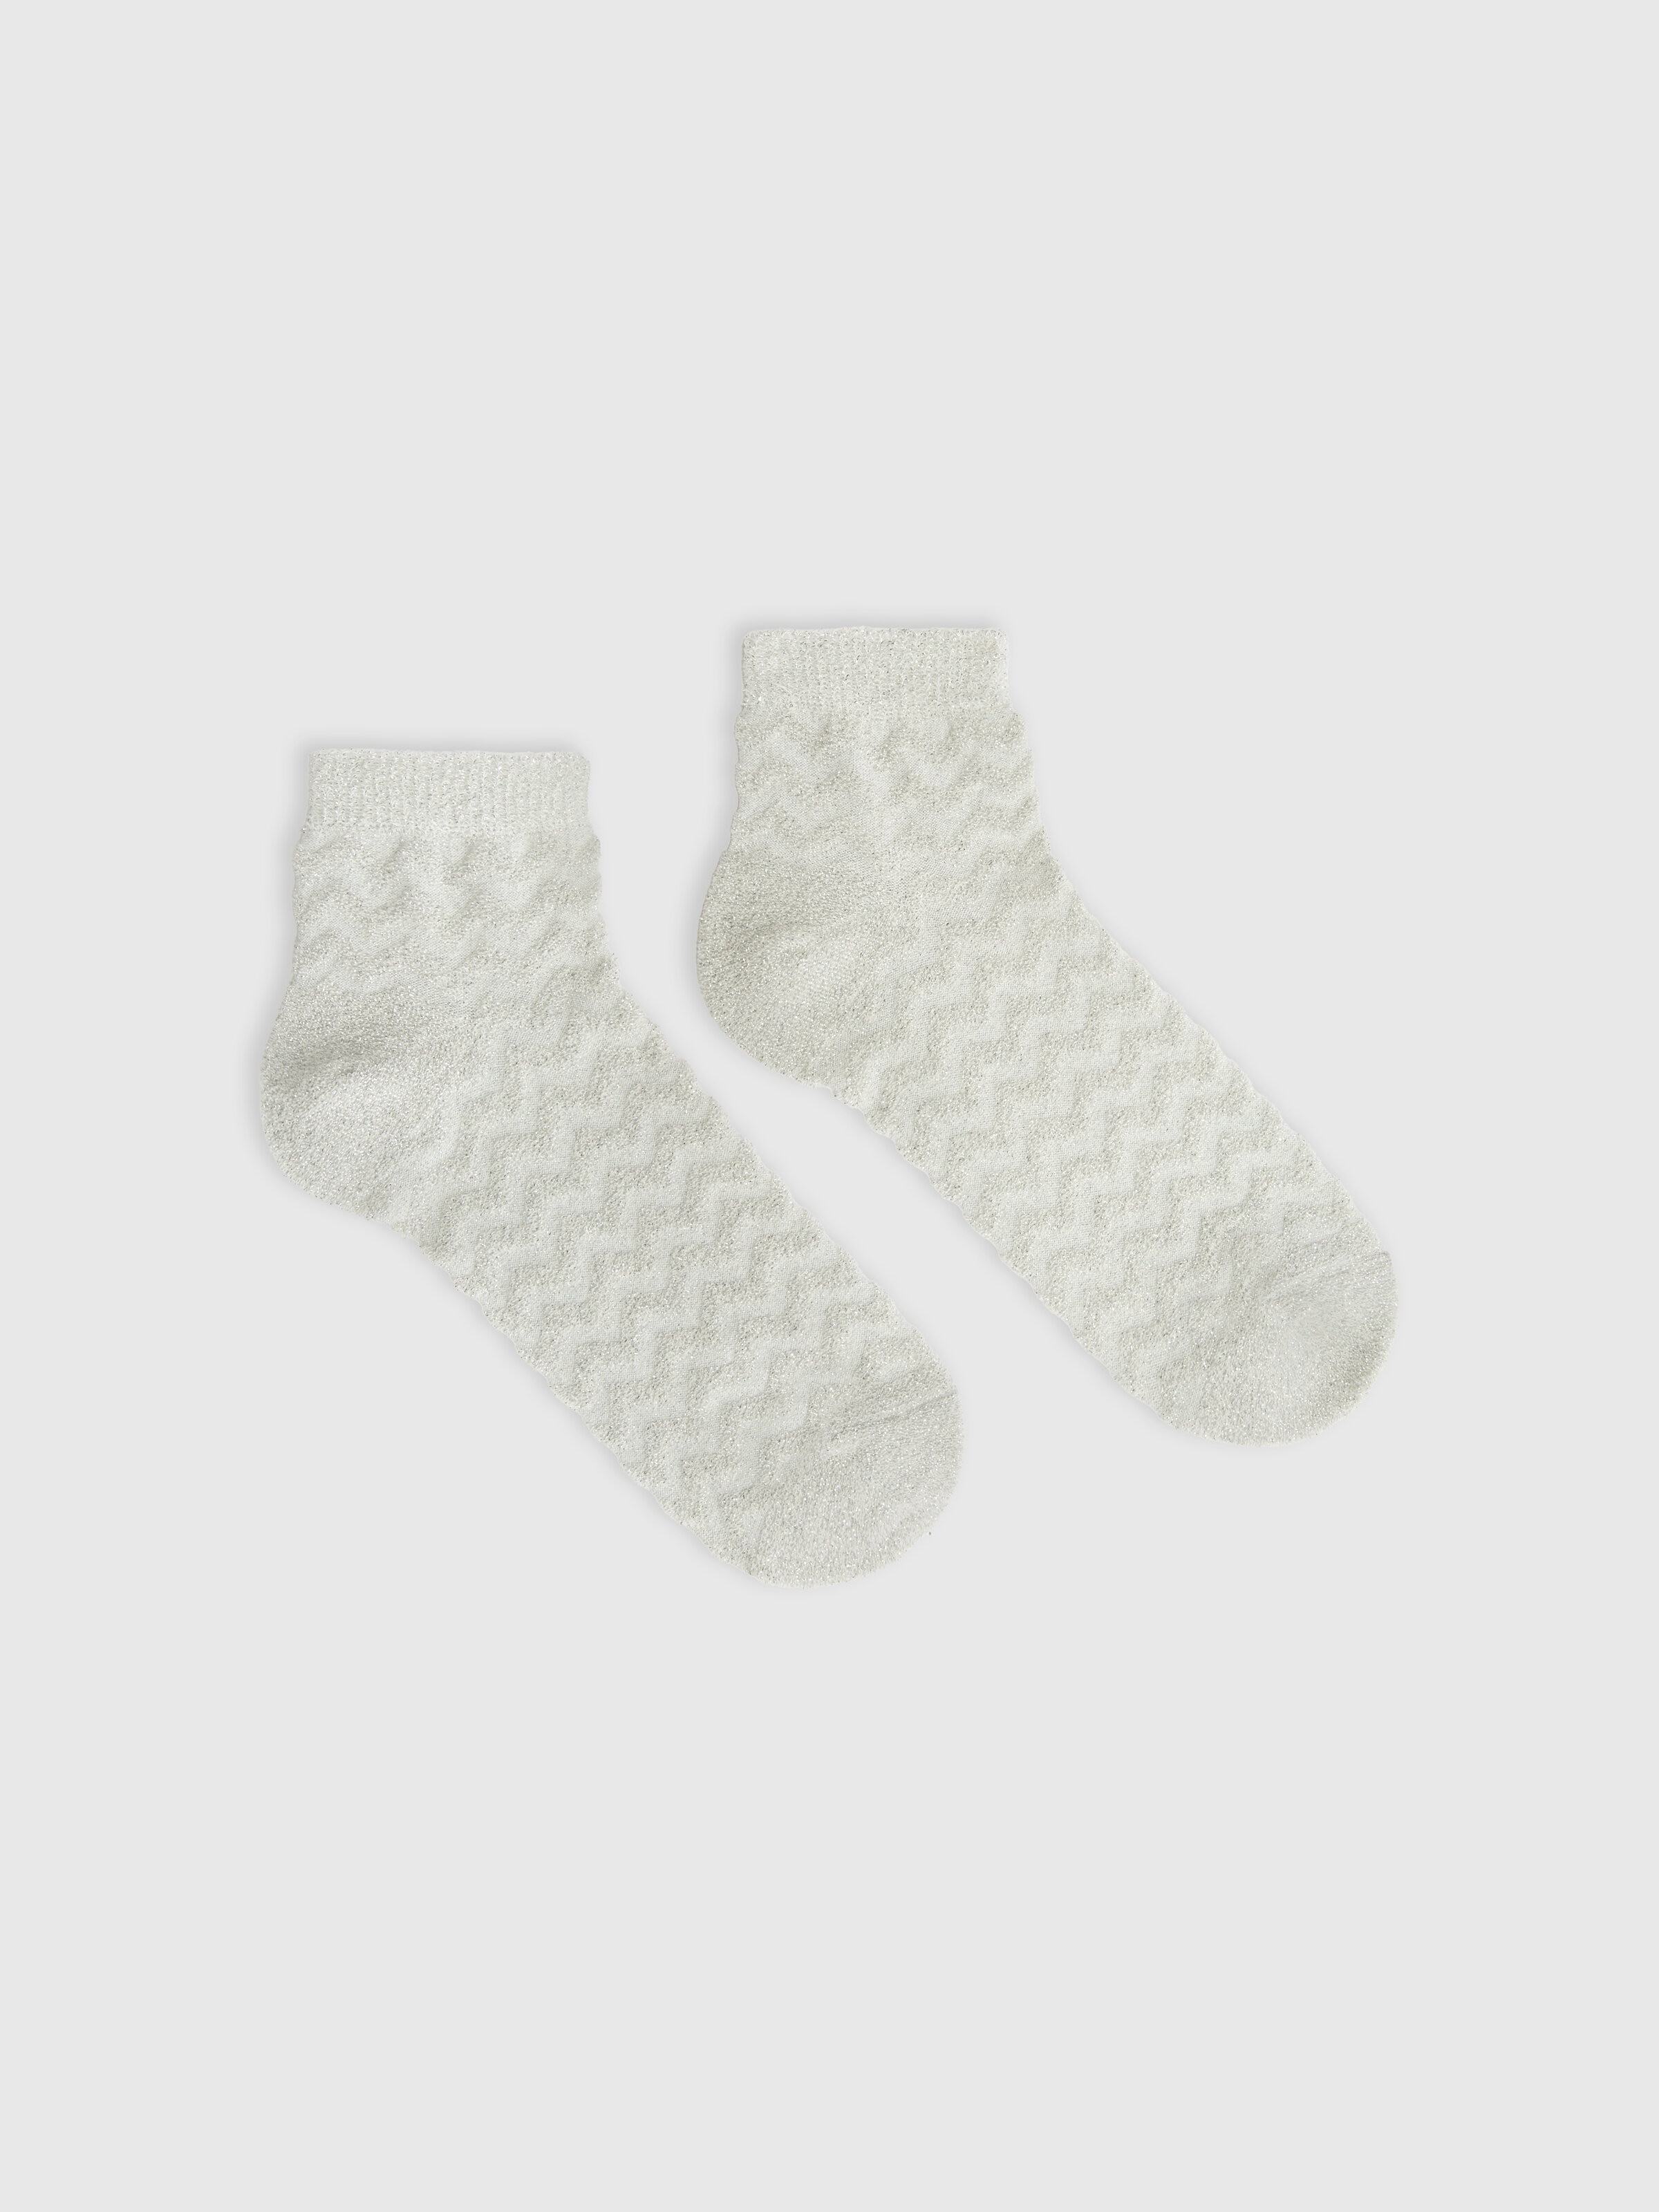 Socken aus Baumwolle und Nylon mit Zickzackmuster, Mehrfarbig  - 0